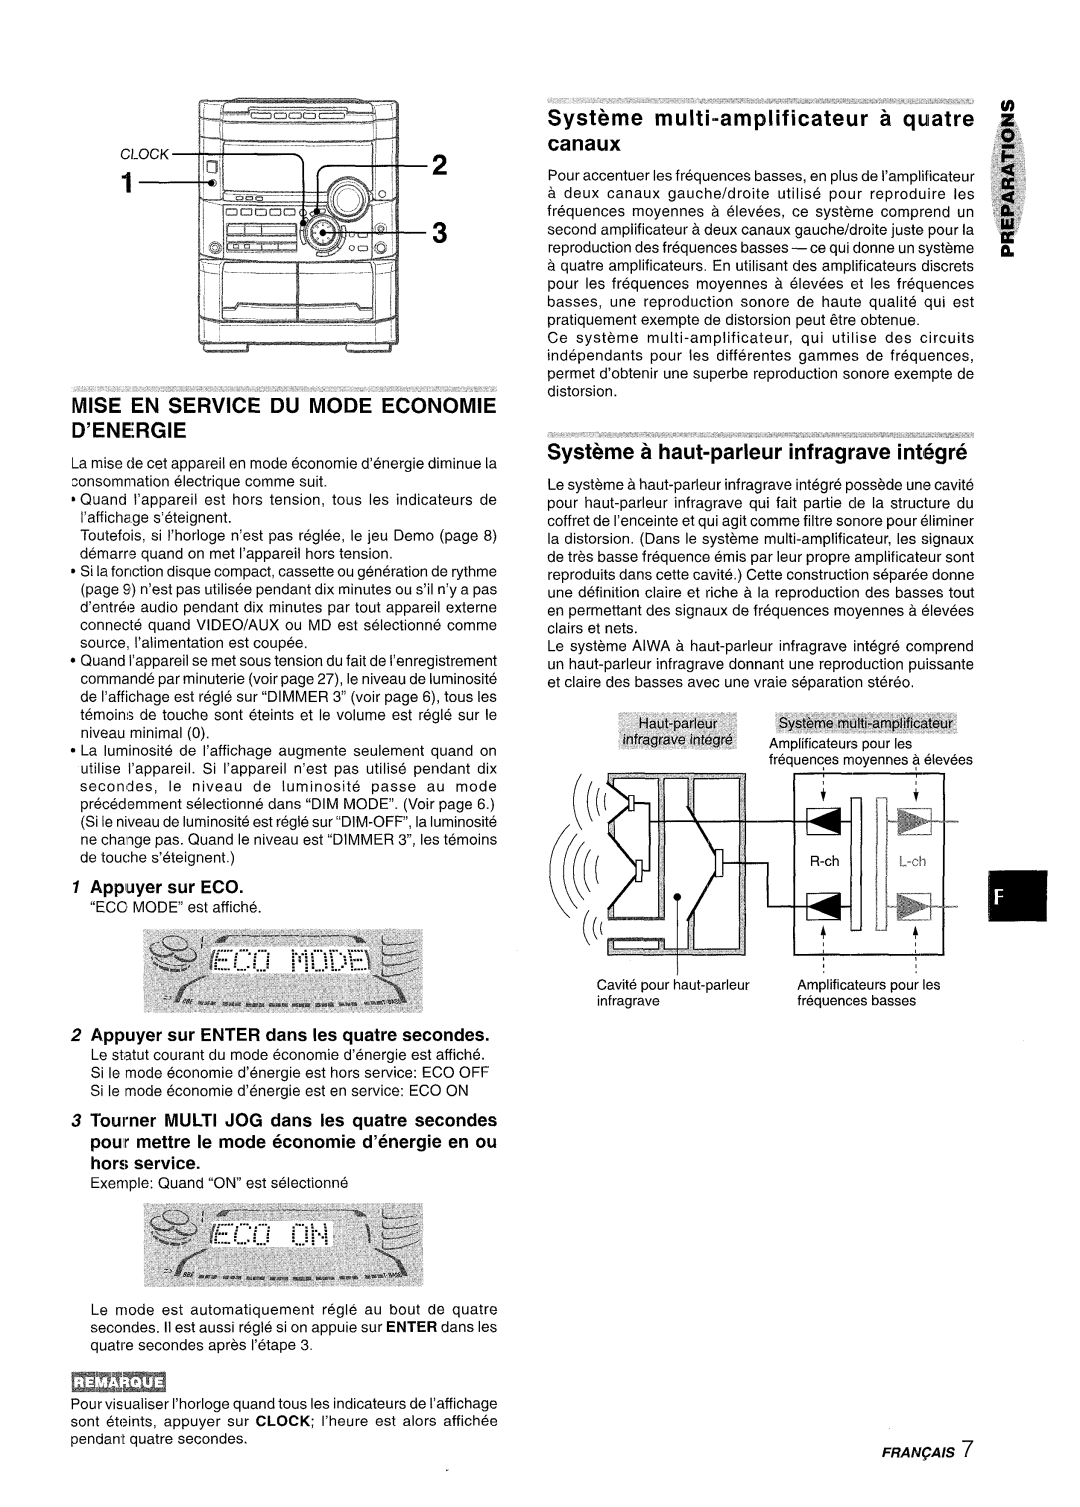 Sony NSX-A777 manual Mise En Service” Du Mode Economie D’Energie, canaux, Appuyer sur ENTER clans Ies quatre secondes 